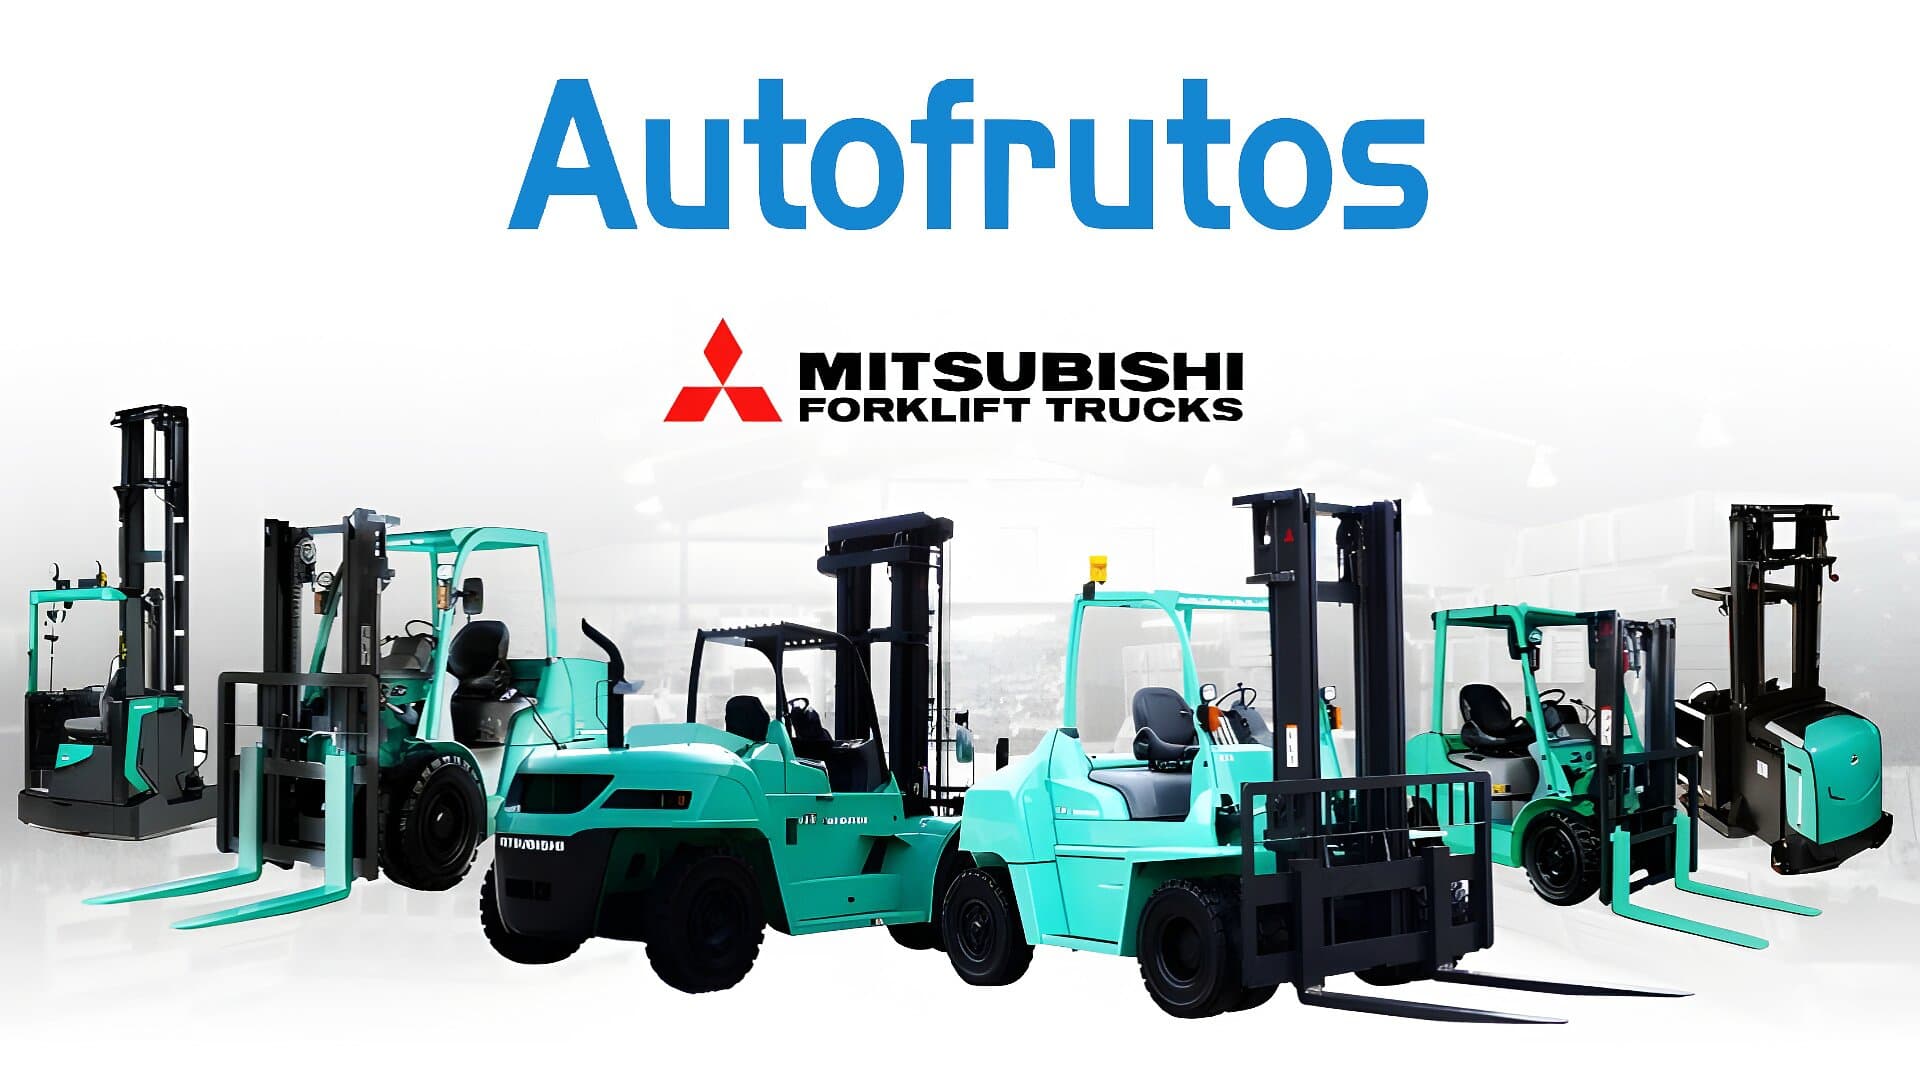 Autofrutos se convierte en distribuidor oficial de Mitsubishi Forklift Trucks para la Región de Murcia